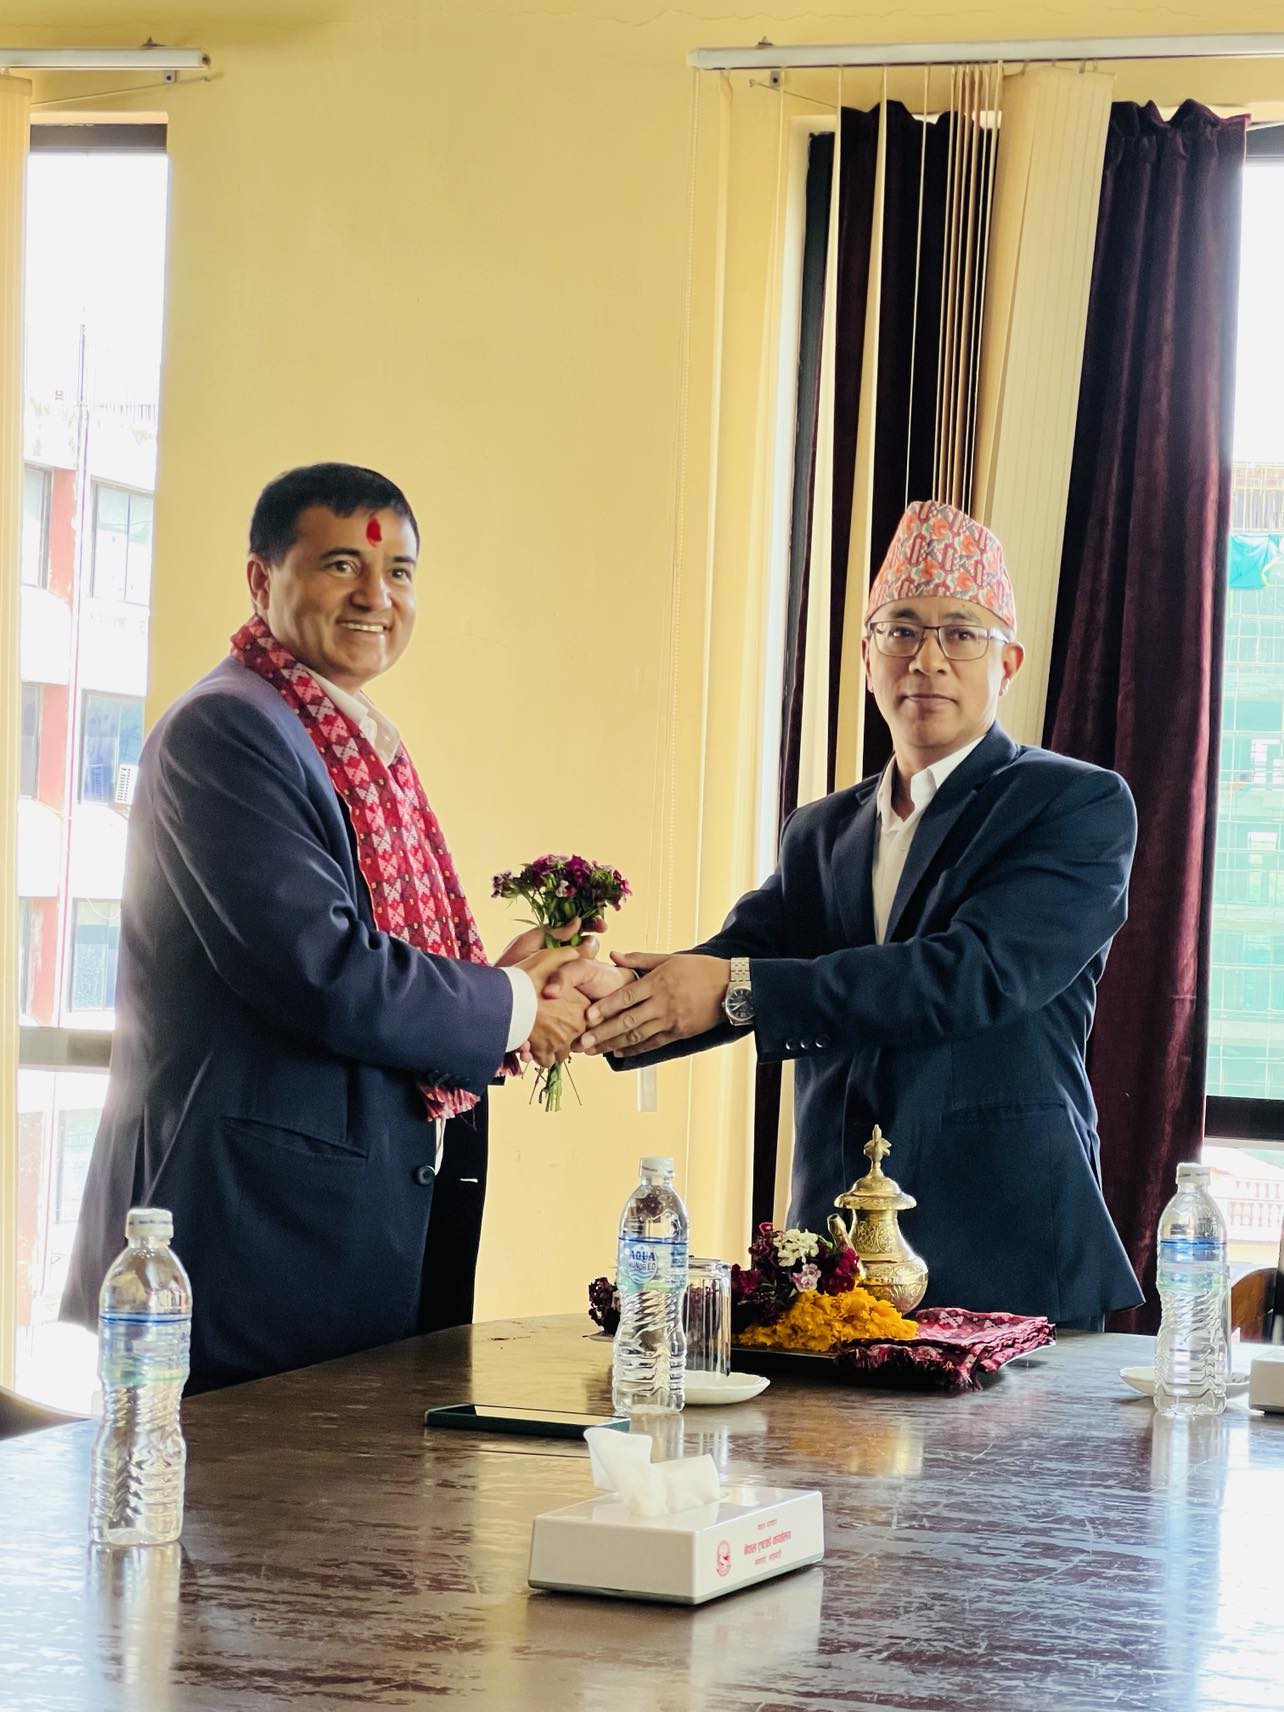 Slider Image: नेपाल ट्रष्टको कार्यालयका सहसचिव श्री दिपक राज नेपालज्यूलाई स्वागत कार्यक्रम